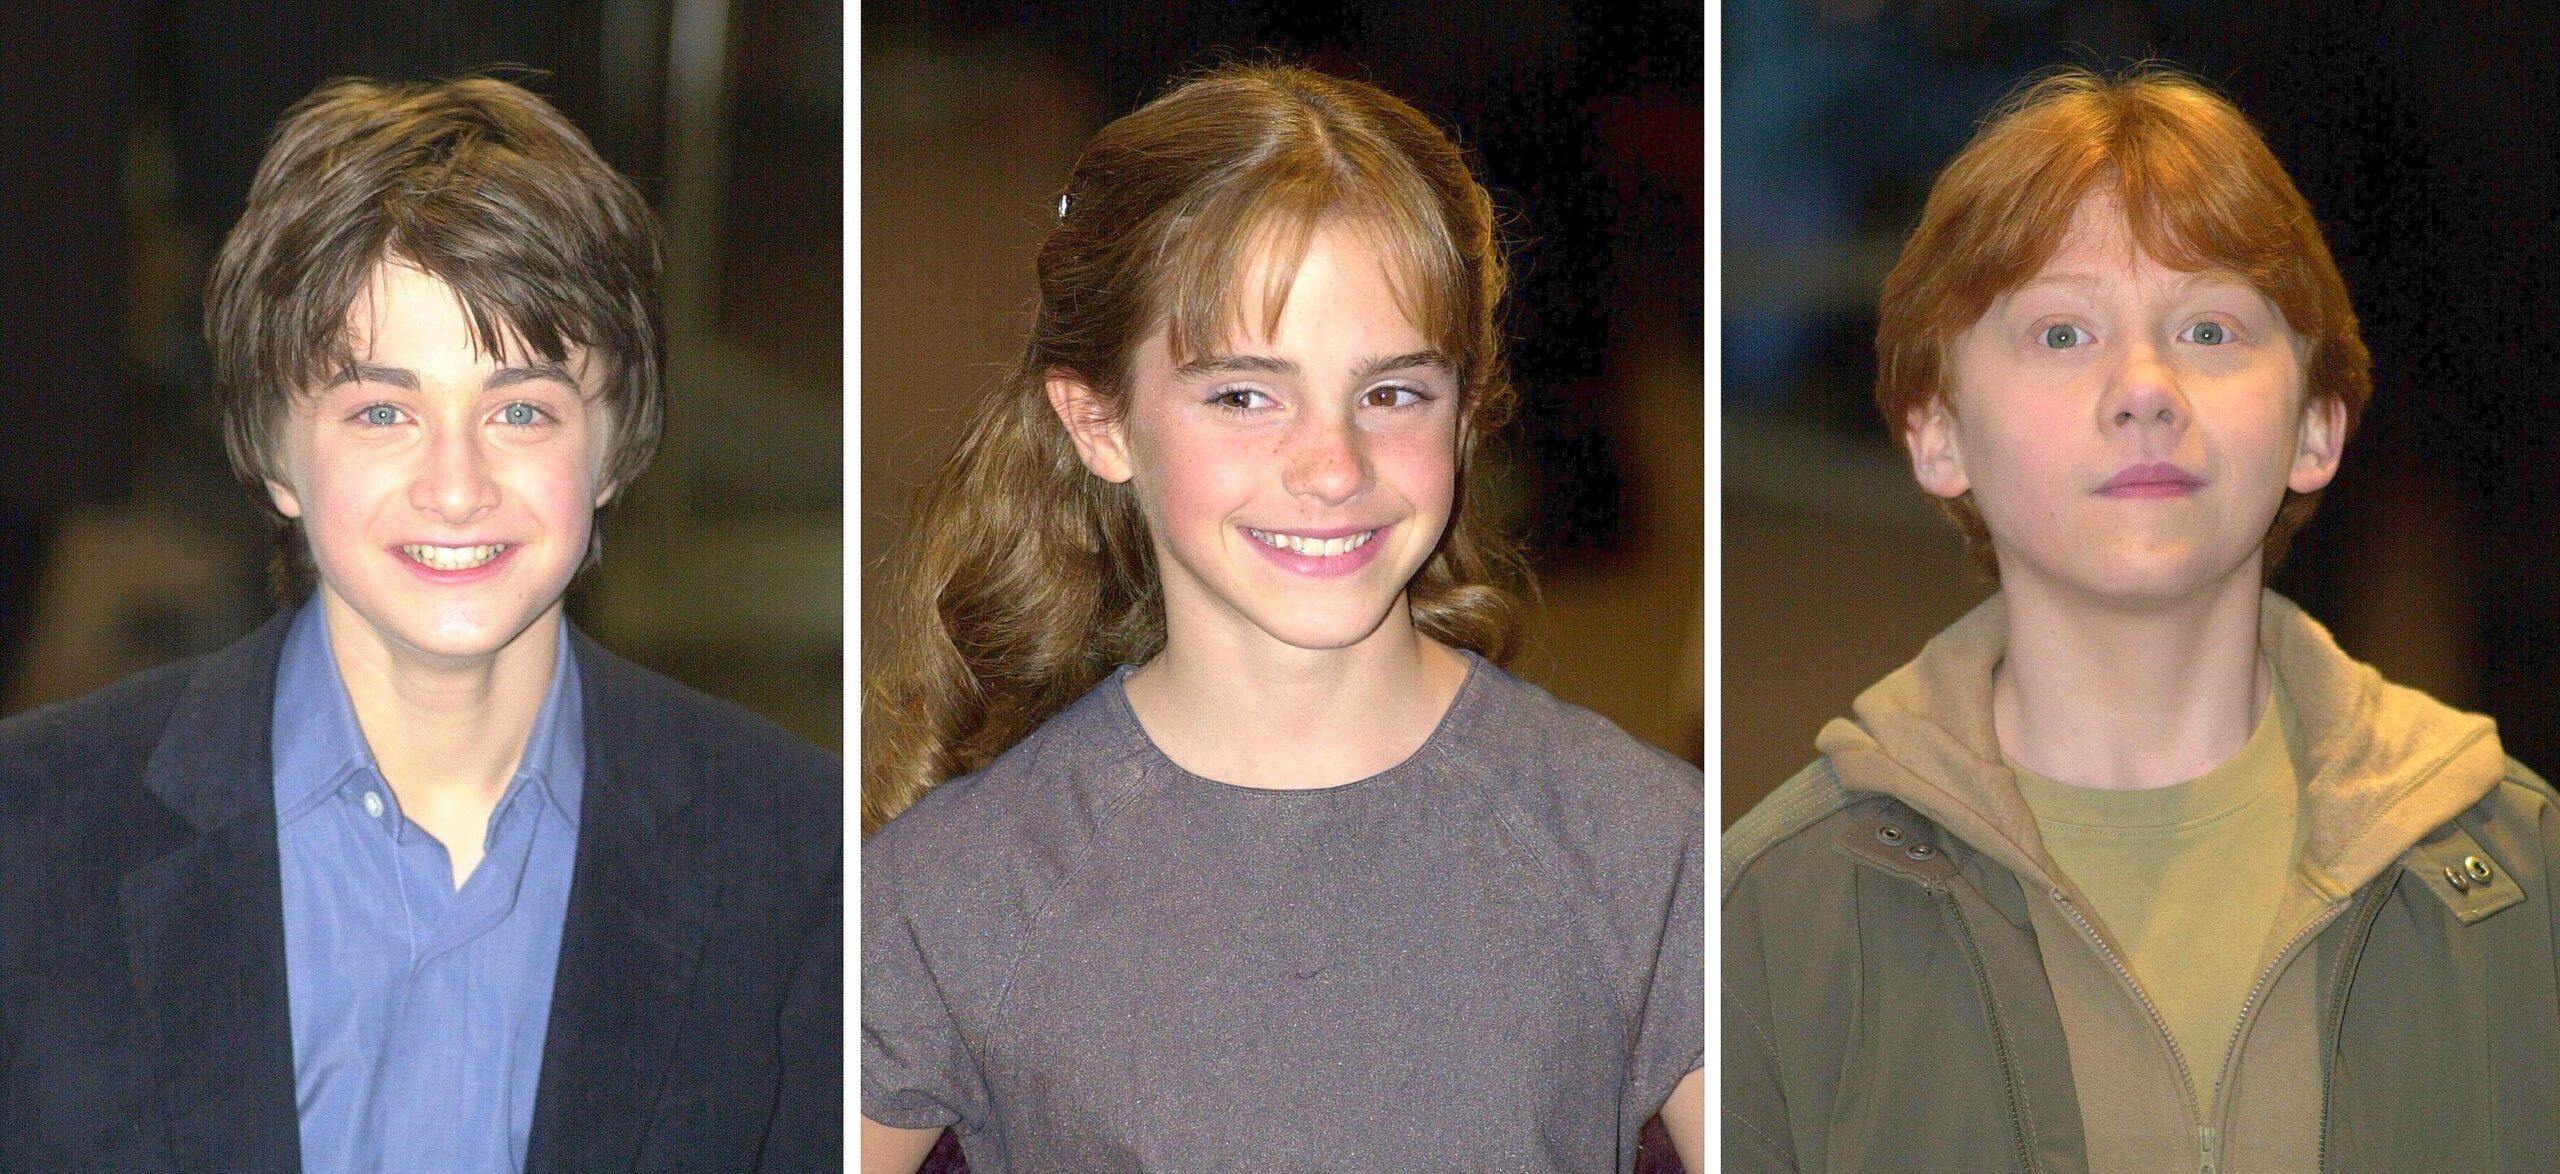 Kinder, was seid ihr groß geworden! Beim ersten Harry-Potter-Film im Jahr 2001 waren Daniel Radcliffe, Emma Watson und Rupert Grint gerade mal zwölf, elf und 13 Jahre alt. Fast zehn Jahre später ...